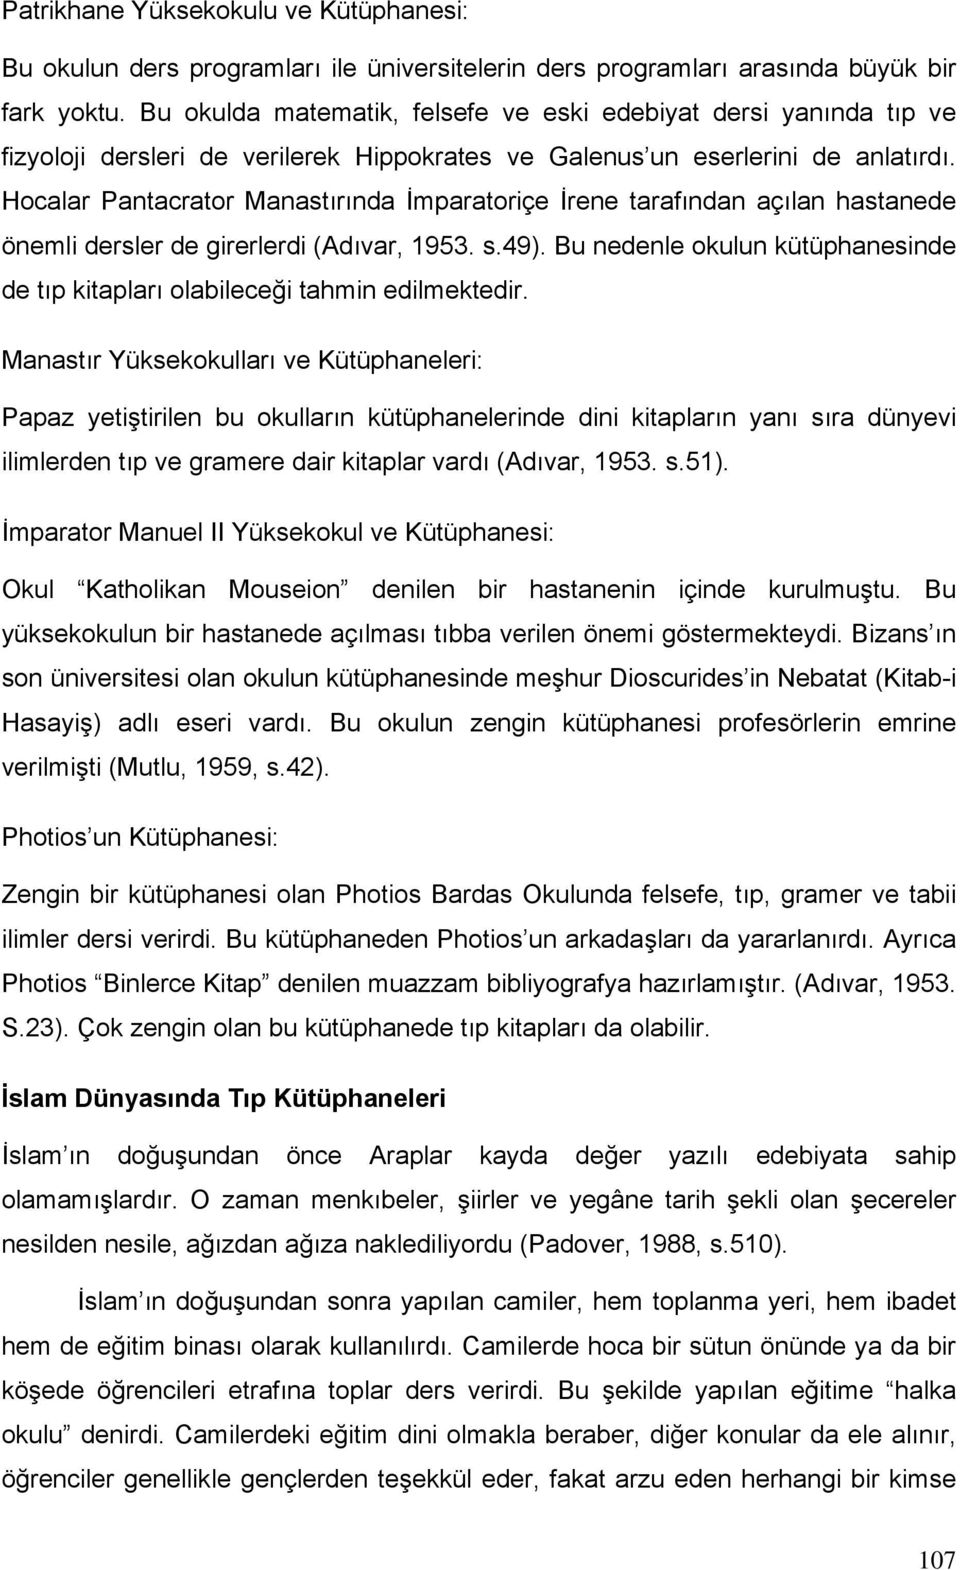 Hocalar Pantacrator Manastırında İmparatoriçe İrene tarafından açılan hastanede önemli dersler de girerlerdi (Adıvar, 1953. s.49).